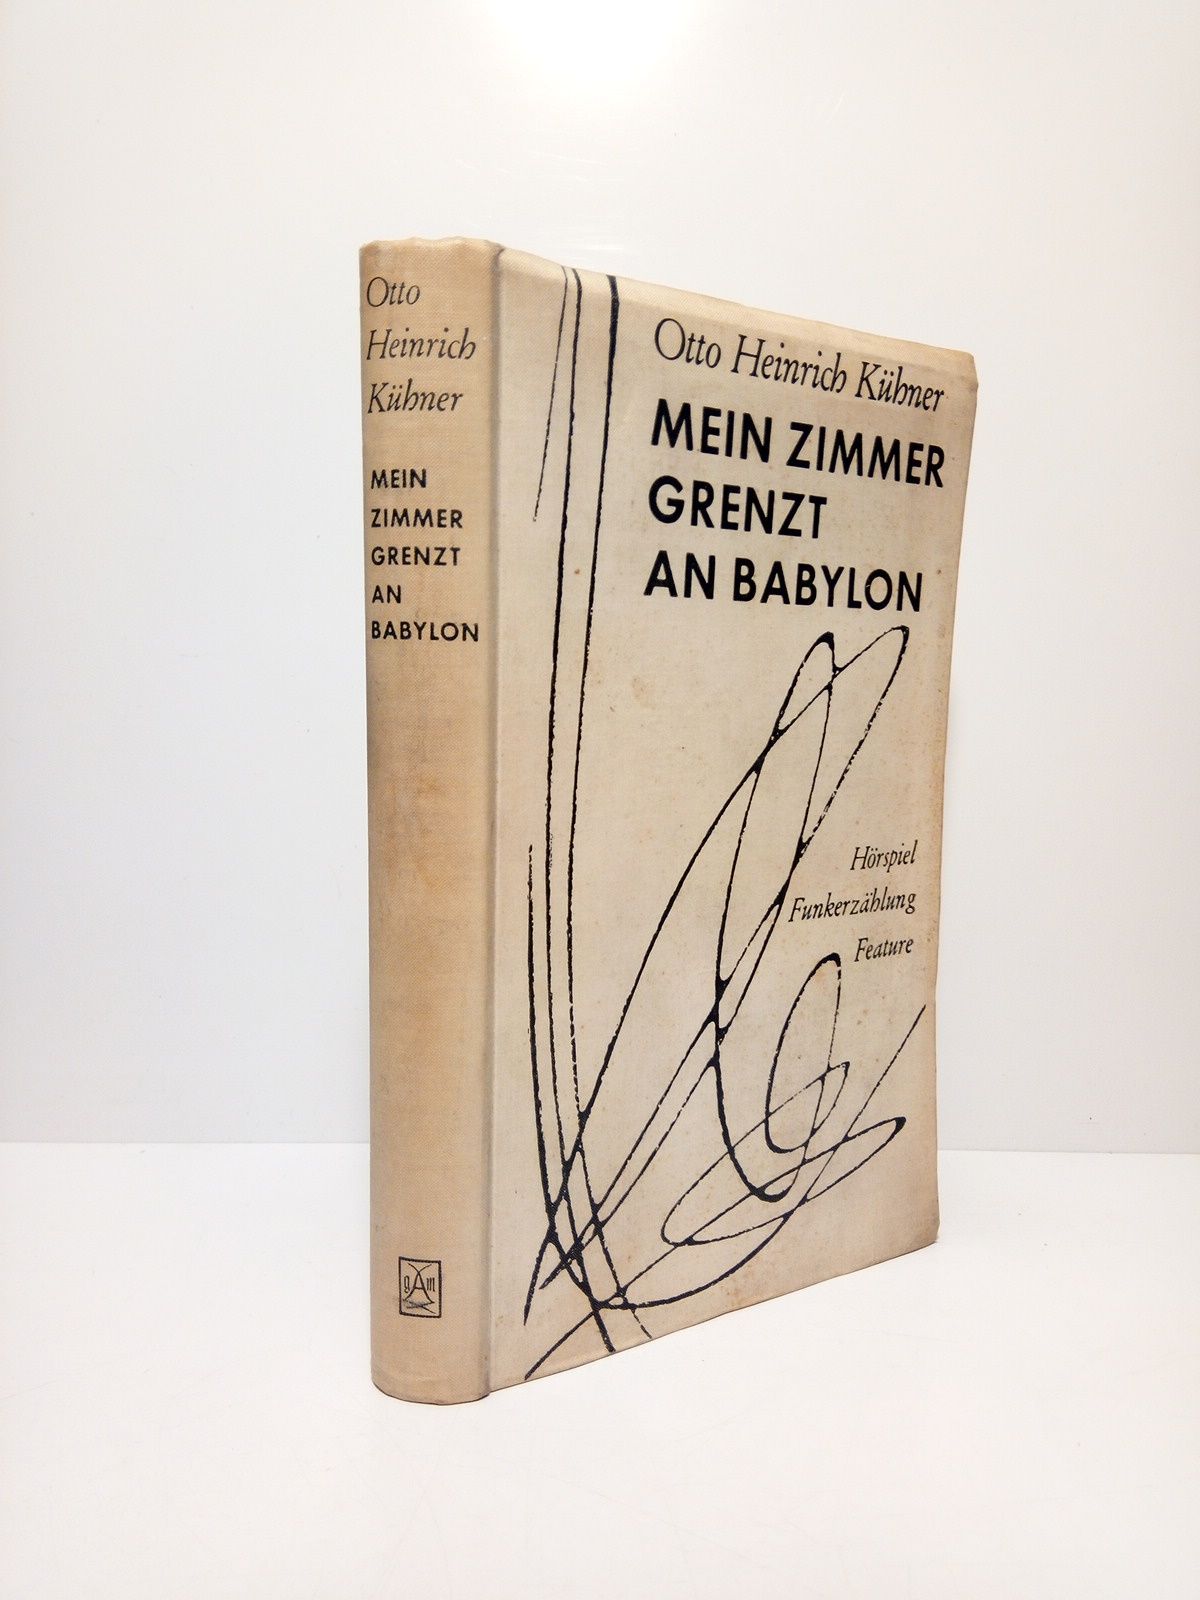 KHNER, Otto Heinrich - Mein Zimmer grenzt an Babylon. (Hrspiel funkerzhlung feature)